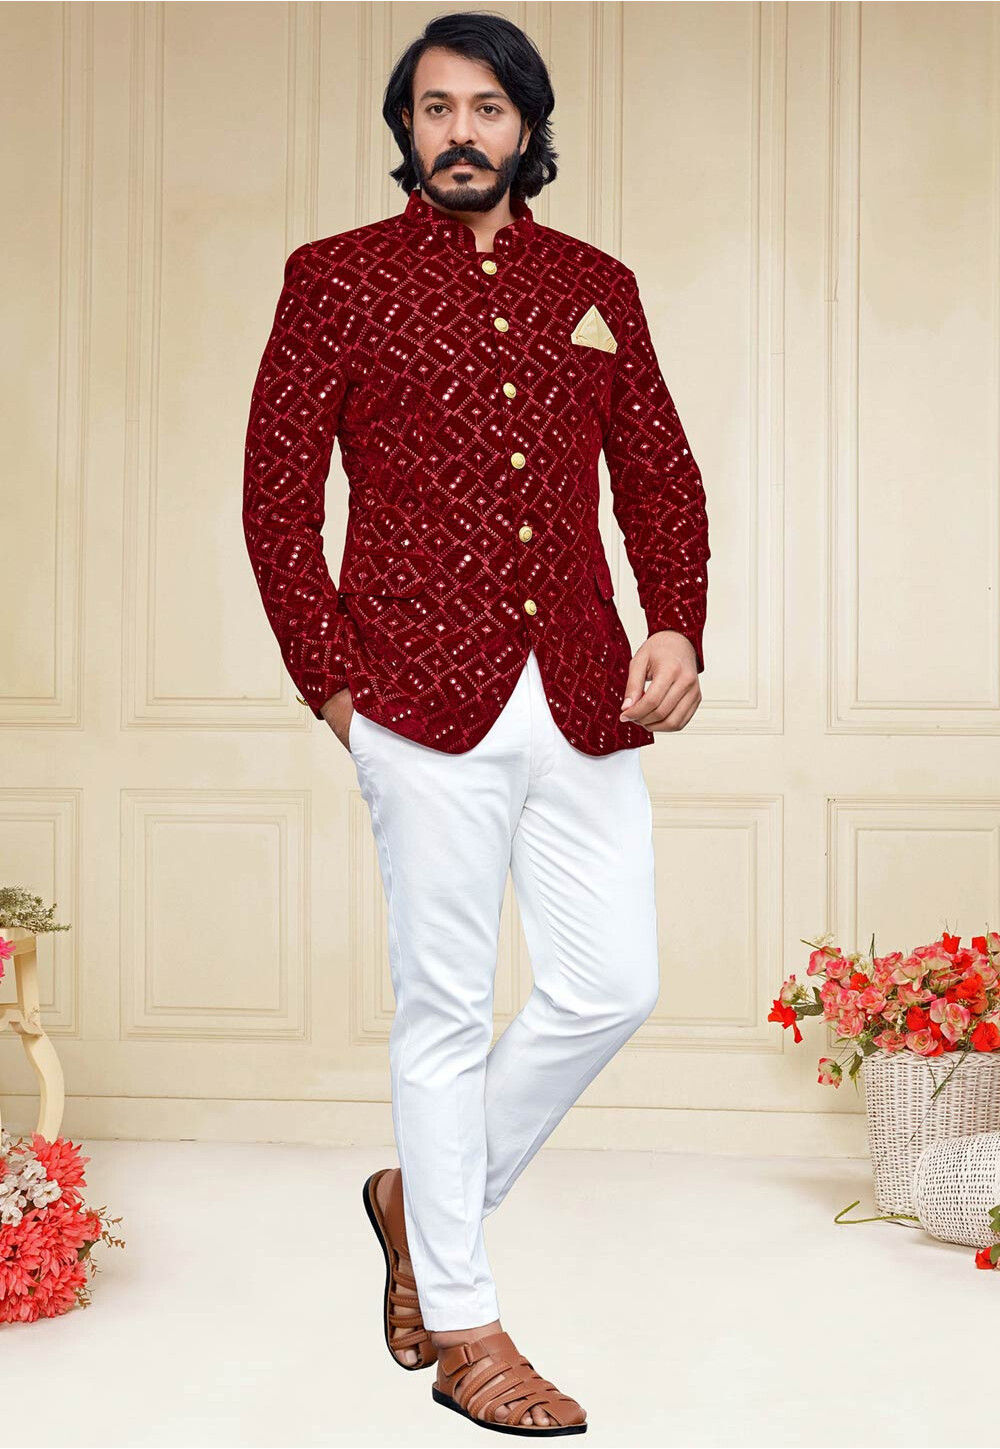 Blue Jodhpuri Suit | Fashion suits for men, Suits, Suit fashion